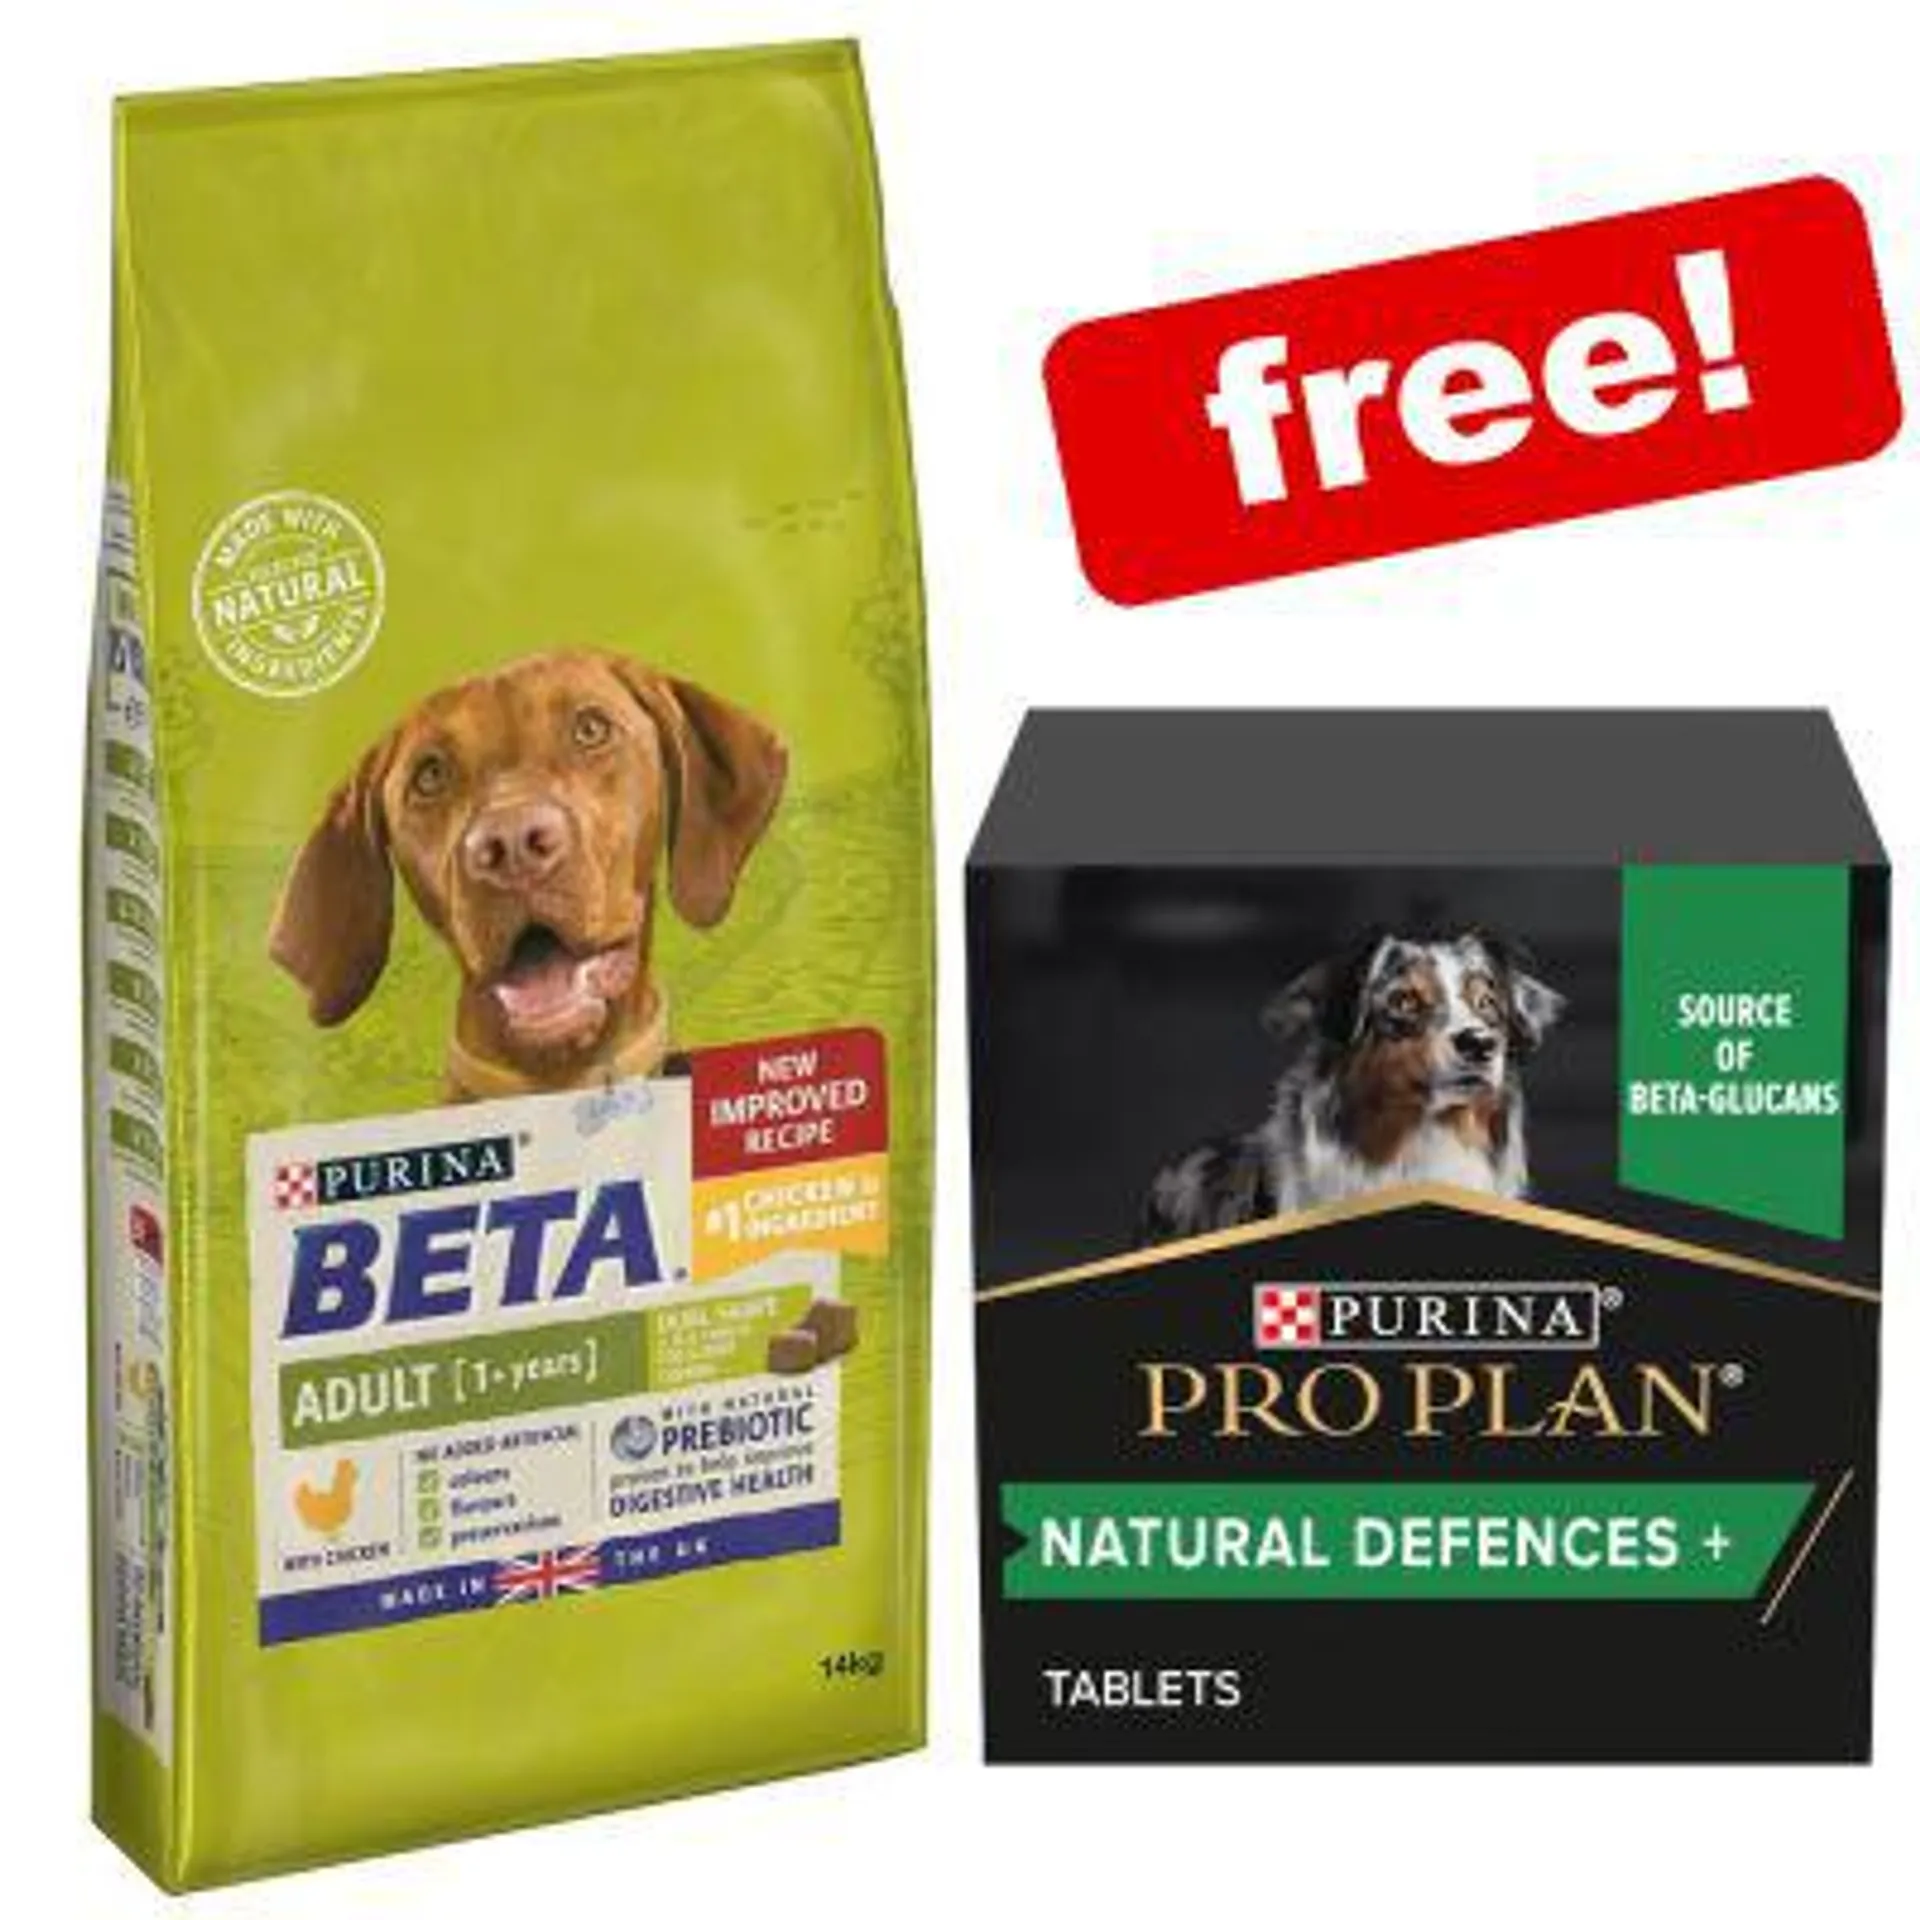 14kg BETA Dry Dog Food + 67g Pro Plan Natural Defences Supplement Free!*